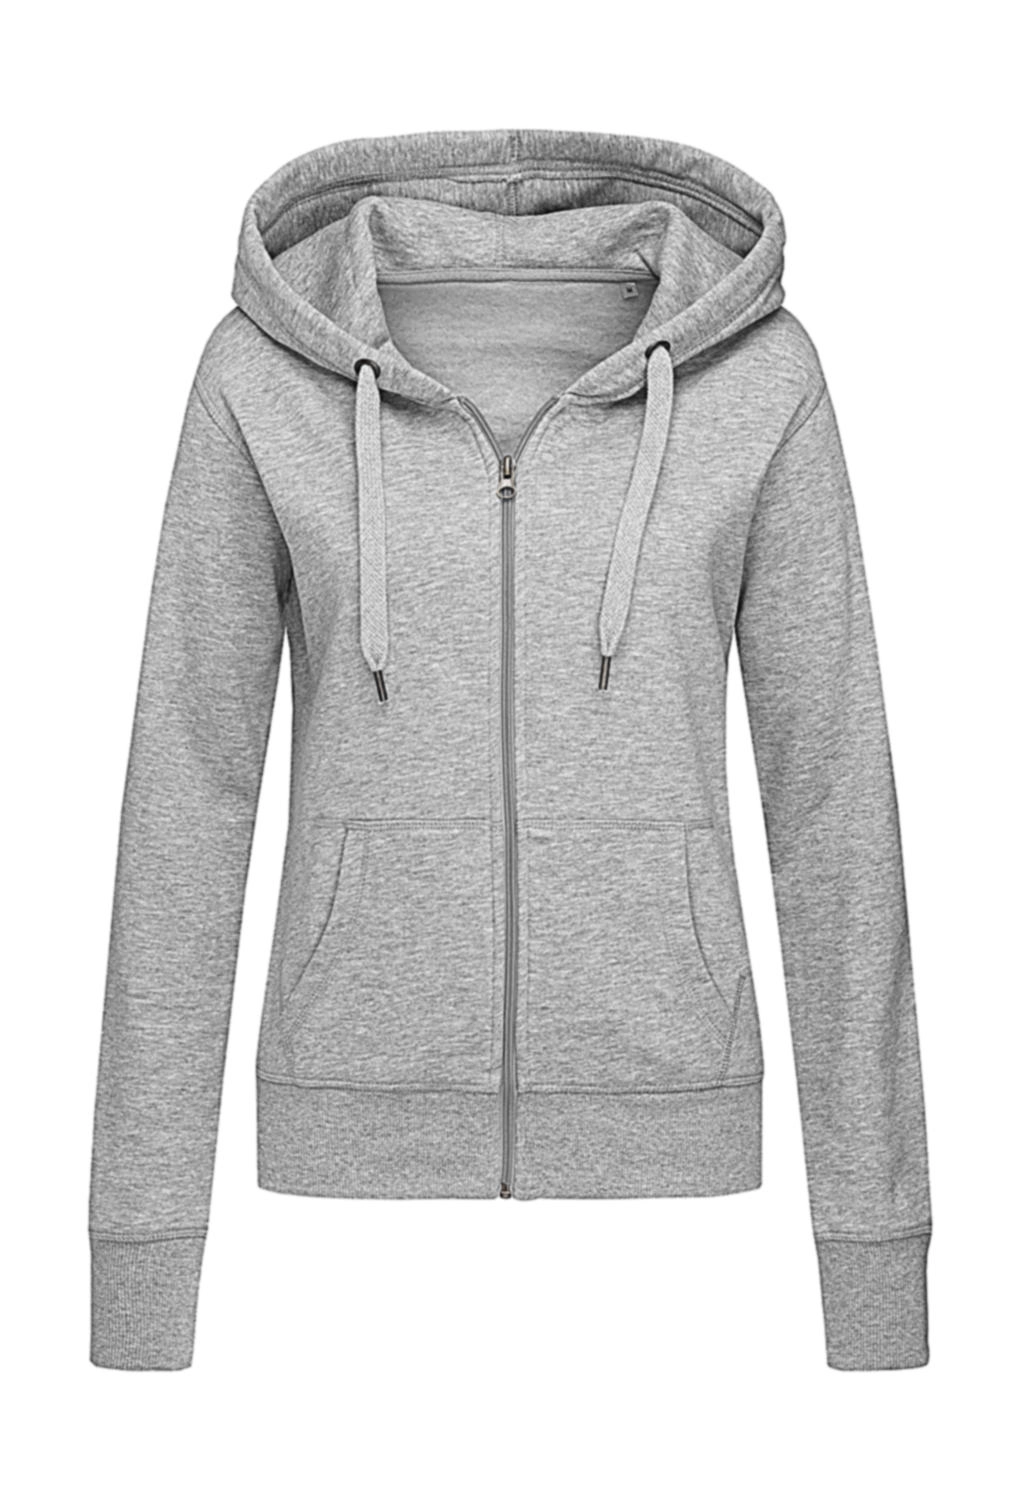 Sweat Jacket Select Women zum Besticken und Bedrucken in der Farbe Grey Heather mit Ihren Logo, Schriftzug oder Motiv.